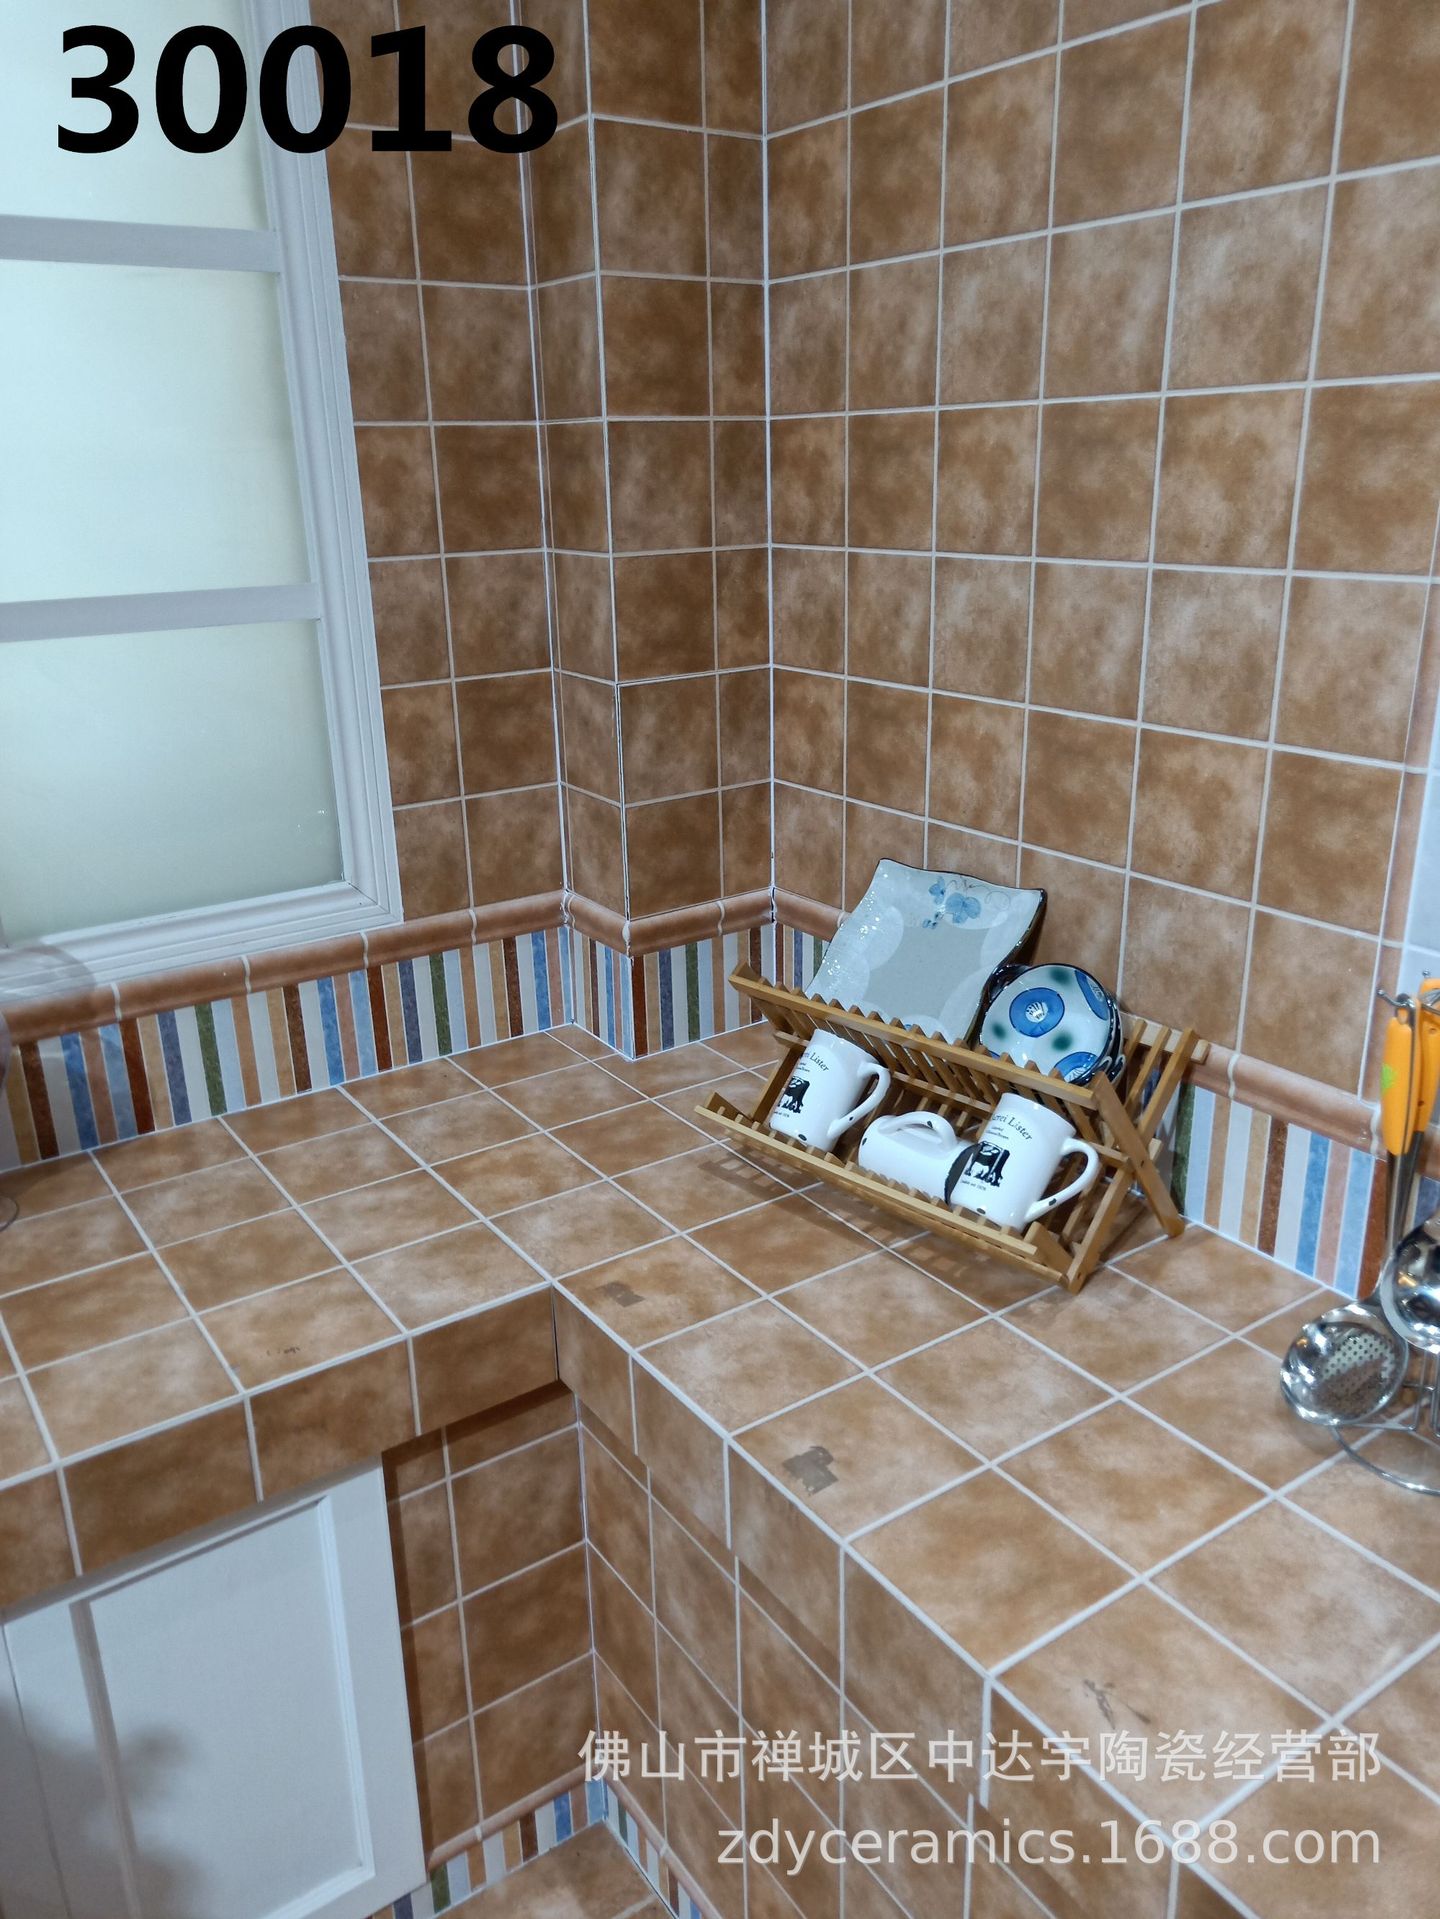 300*600佛山瓷砖厨房卫生间印花地面内墙釉面砖高档防水示例图3